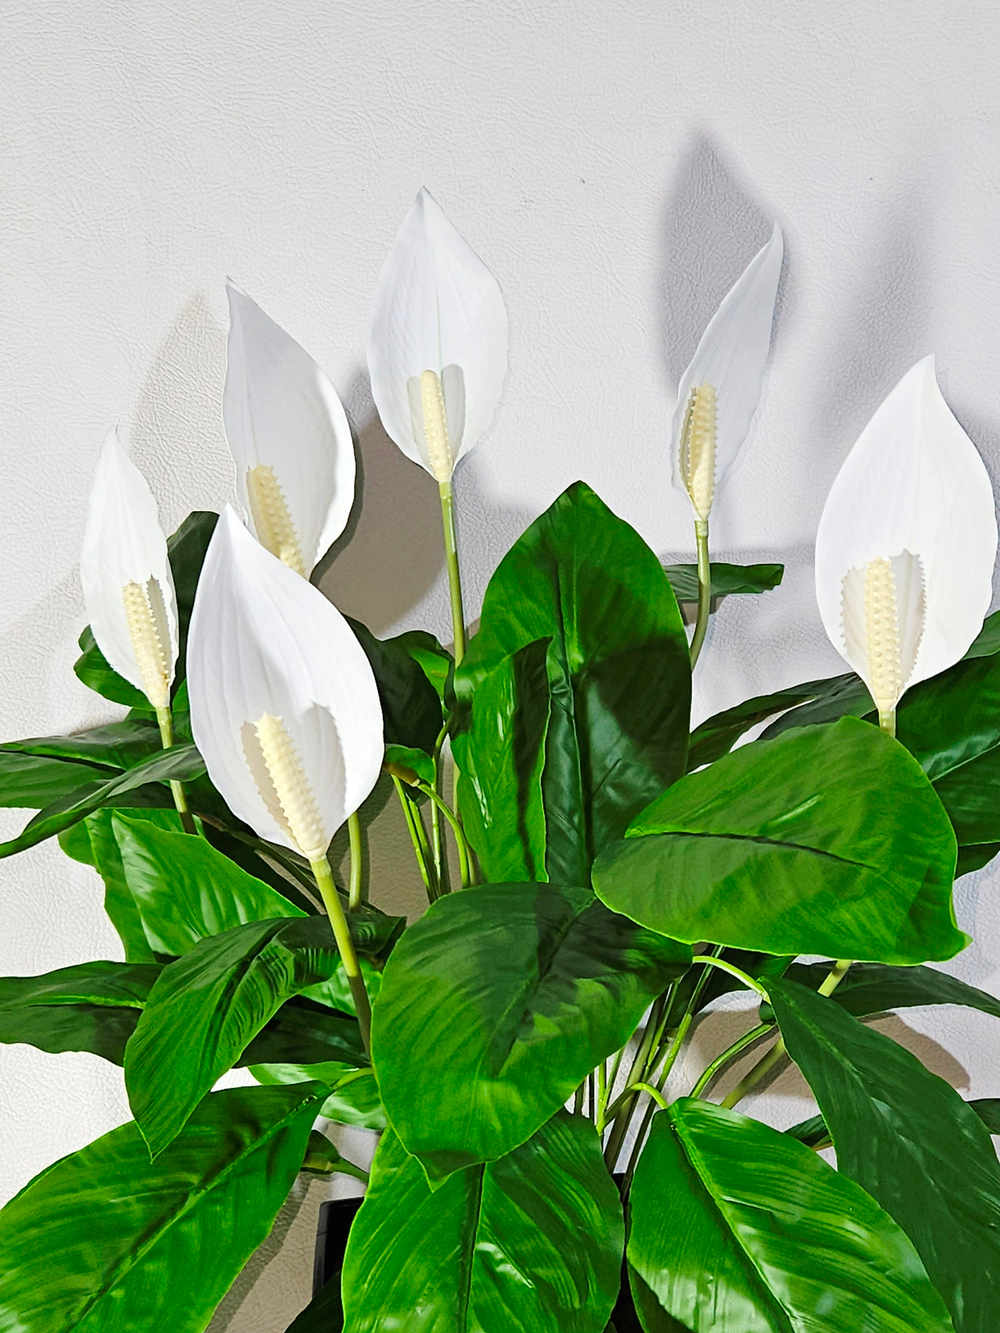 Искусственные цветы Спатифиллум белый средний в высоком белом кашпо 36см